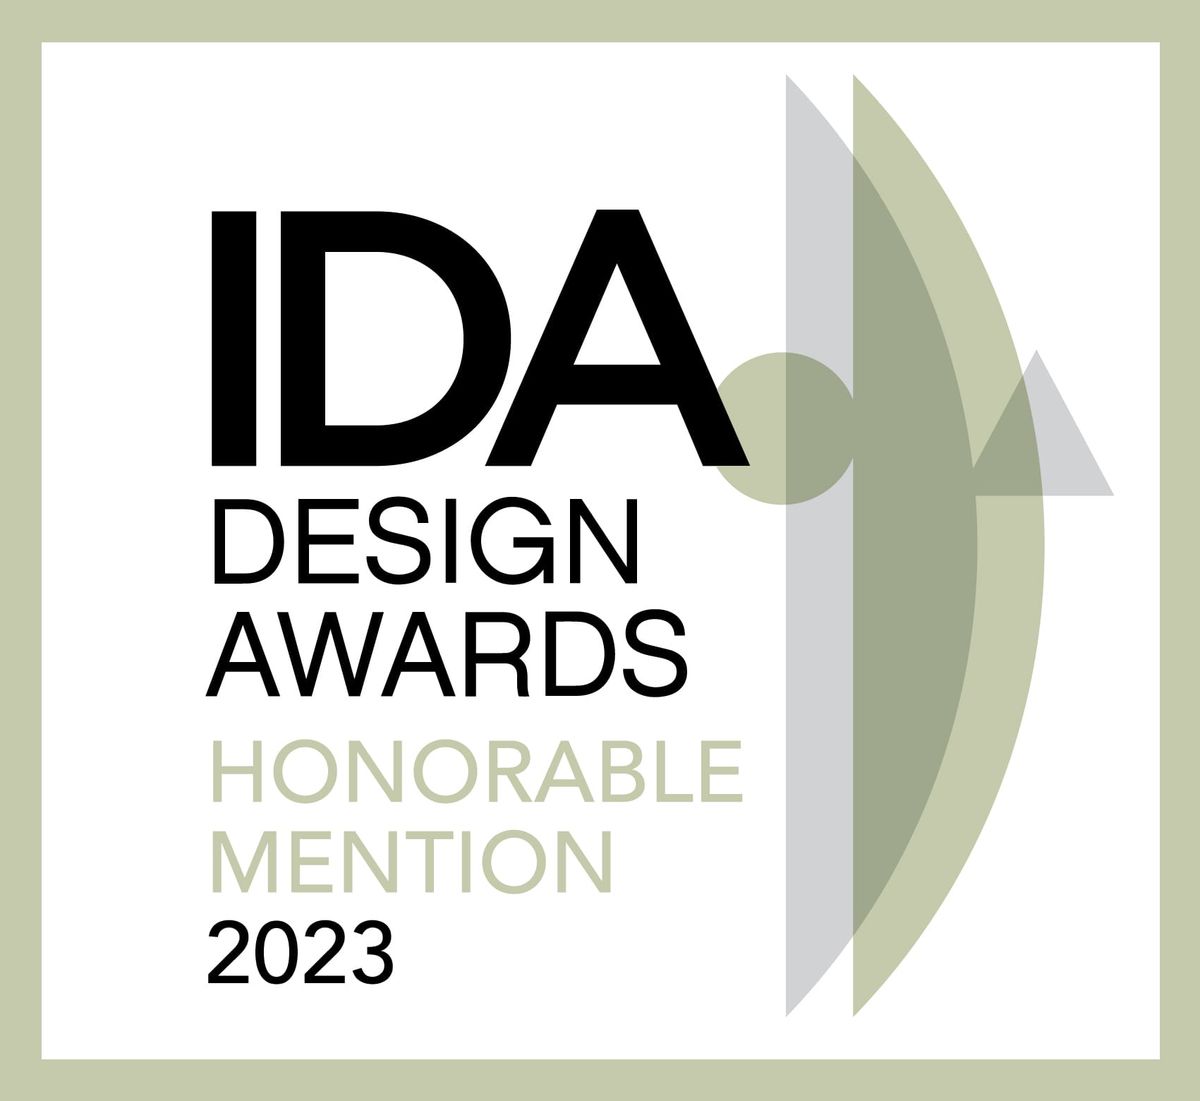 美國國際設計大獎；IDA；International Design Awards；國際獎項；美國； 青築設計；室內設計；空間設計；住宅空間